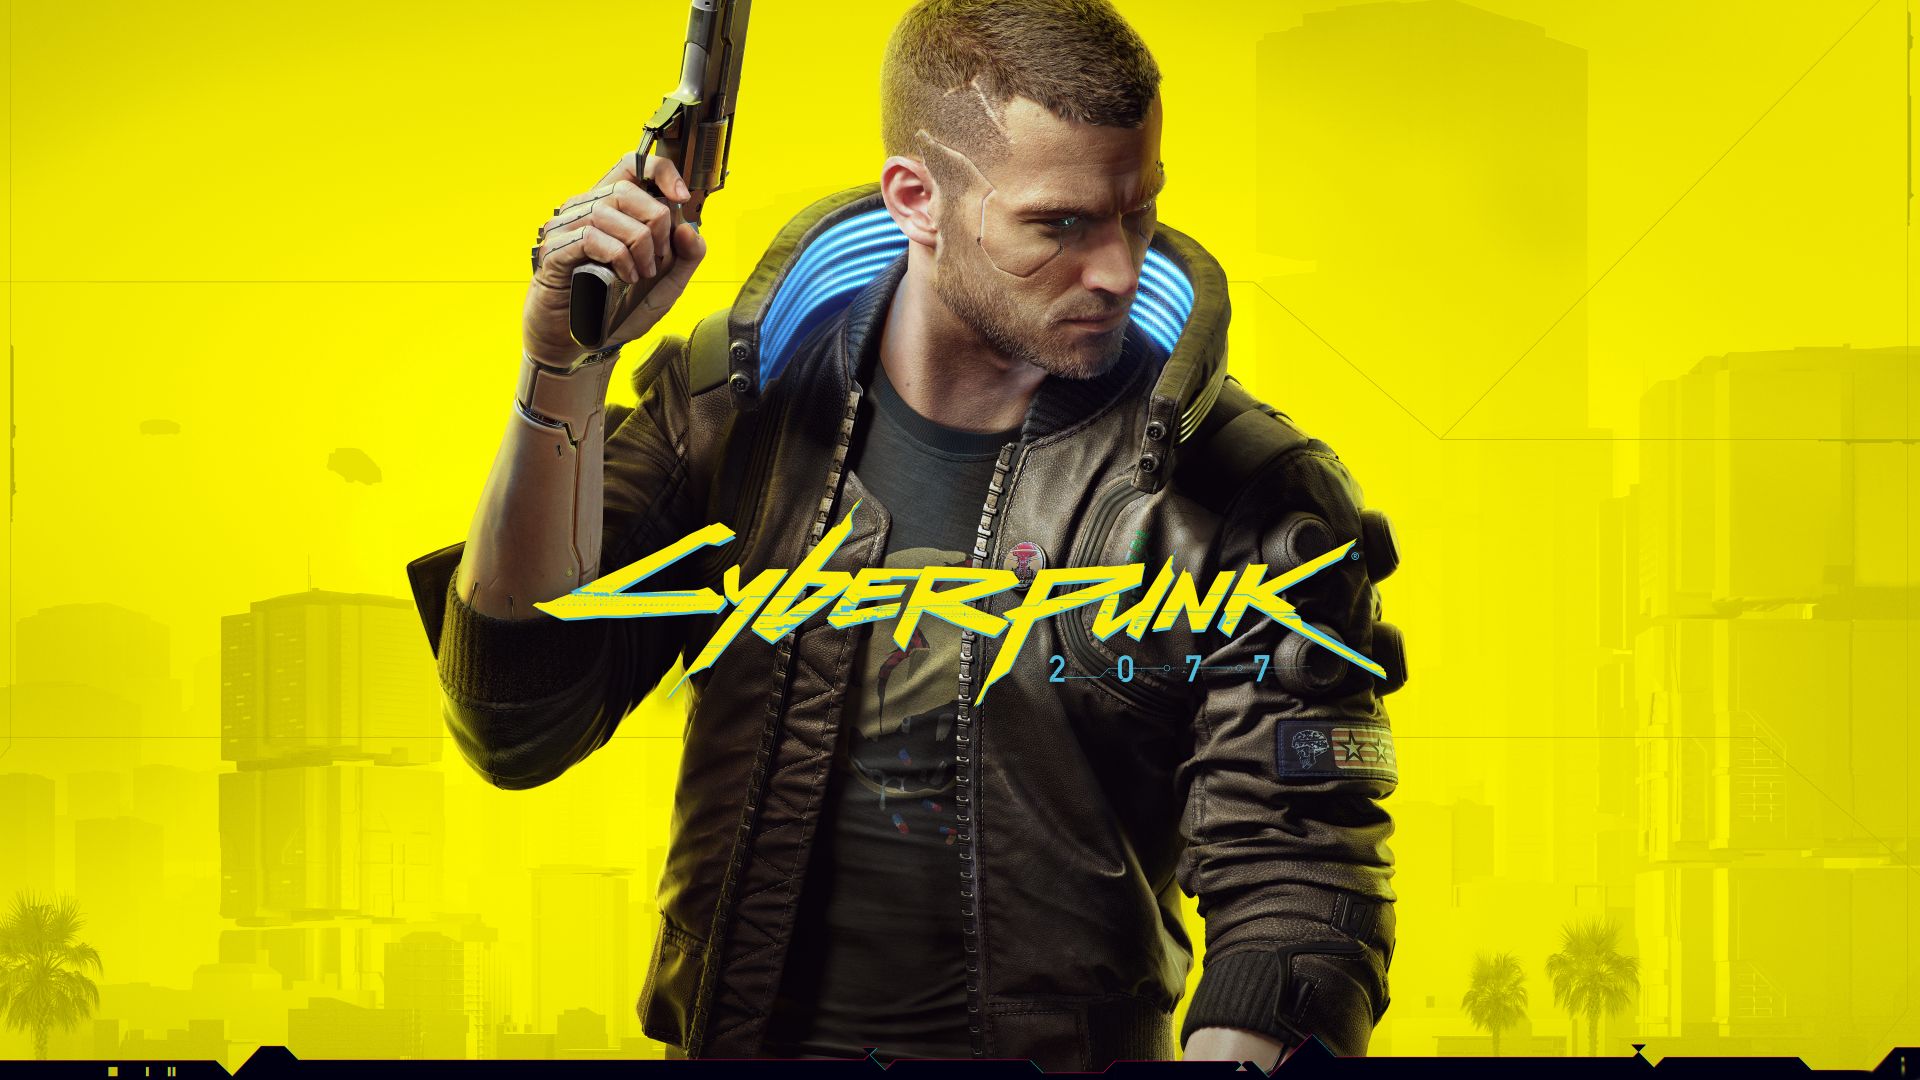 Киберпанк 2077, Cyberpunk 2077, E3 2019, poster, 5K (horizontal)